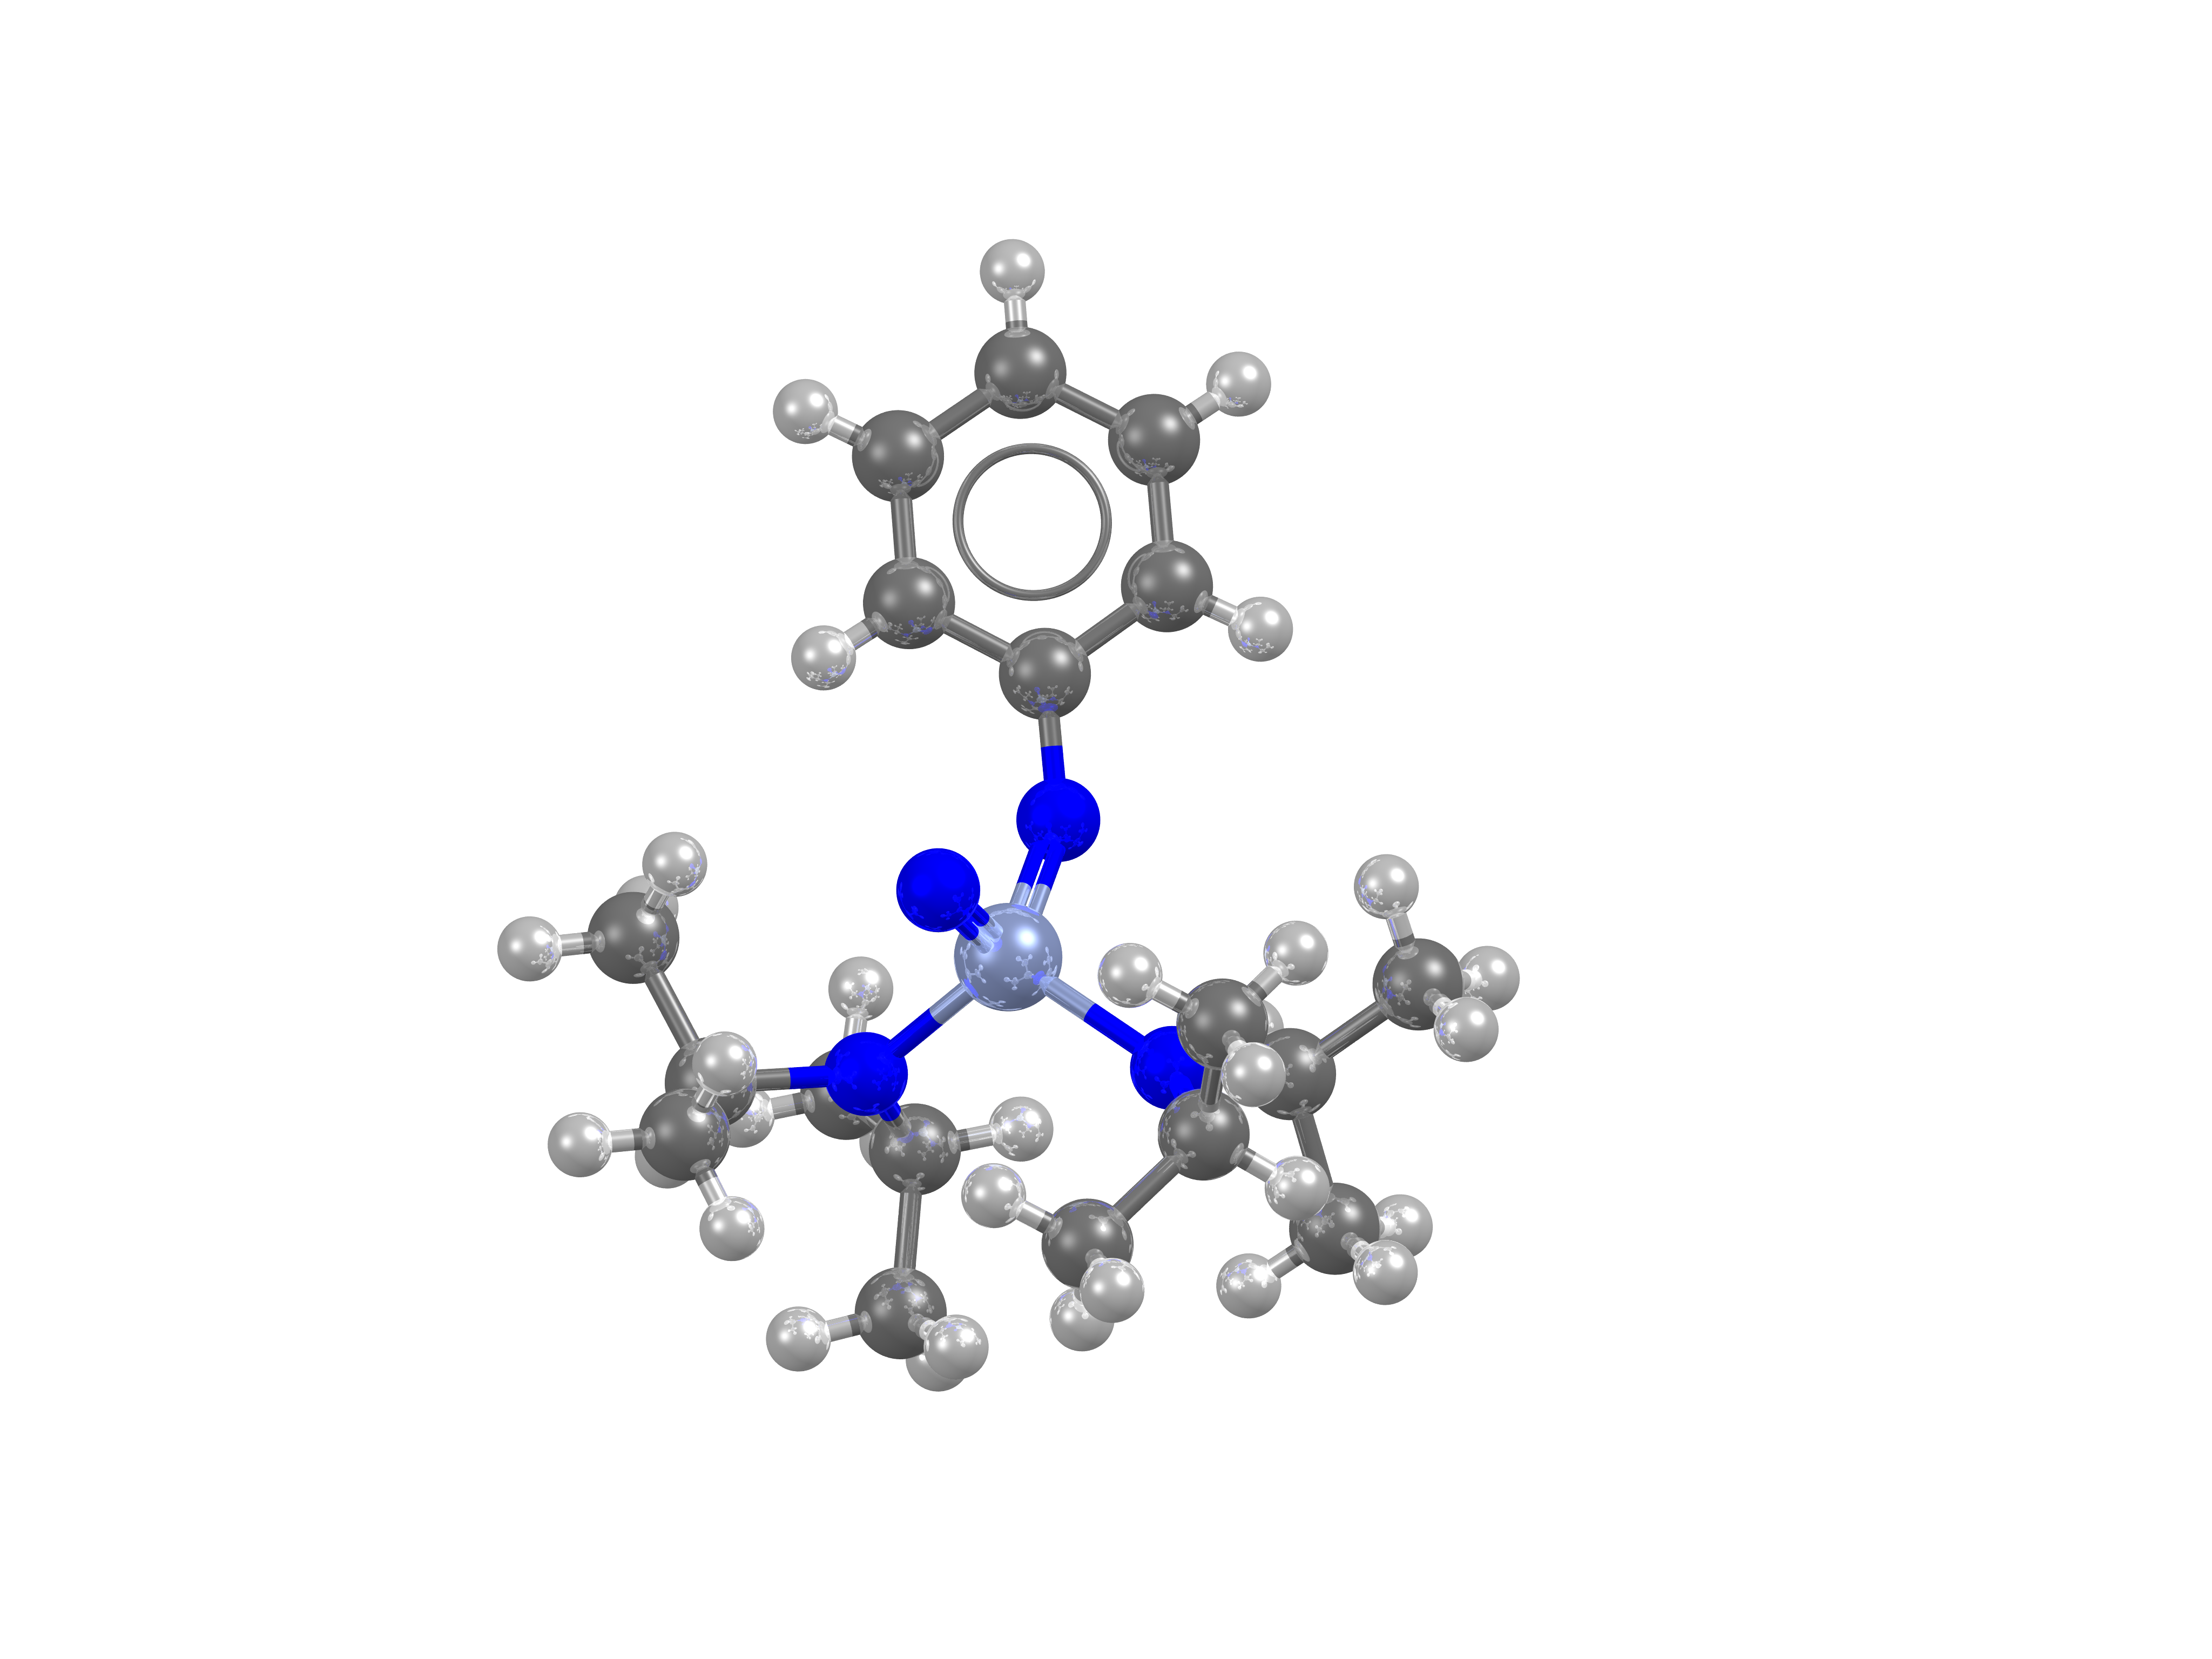 A novel chromium complex with a unique bonding pattern